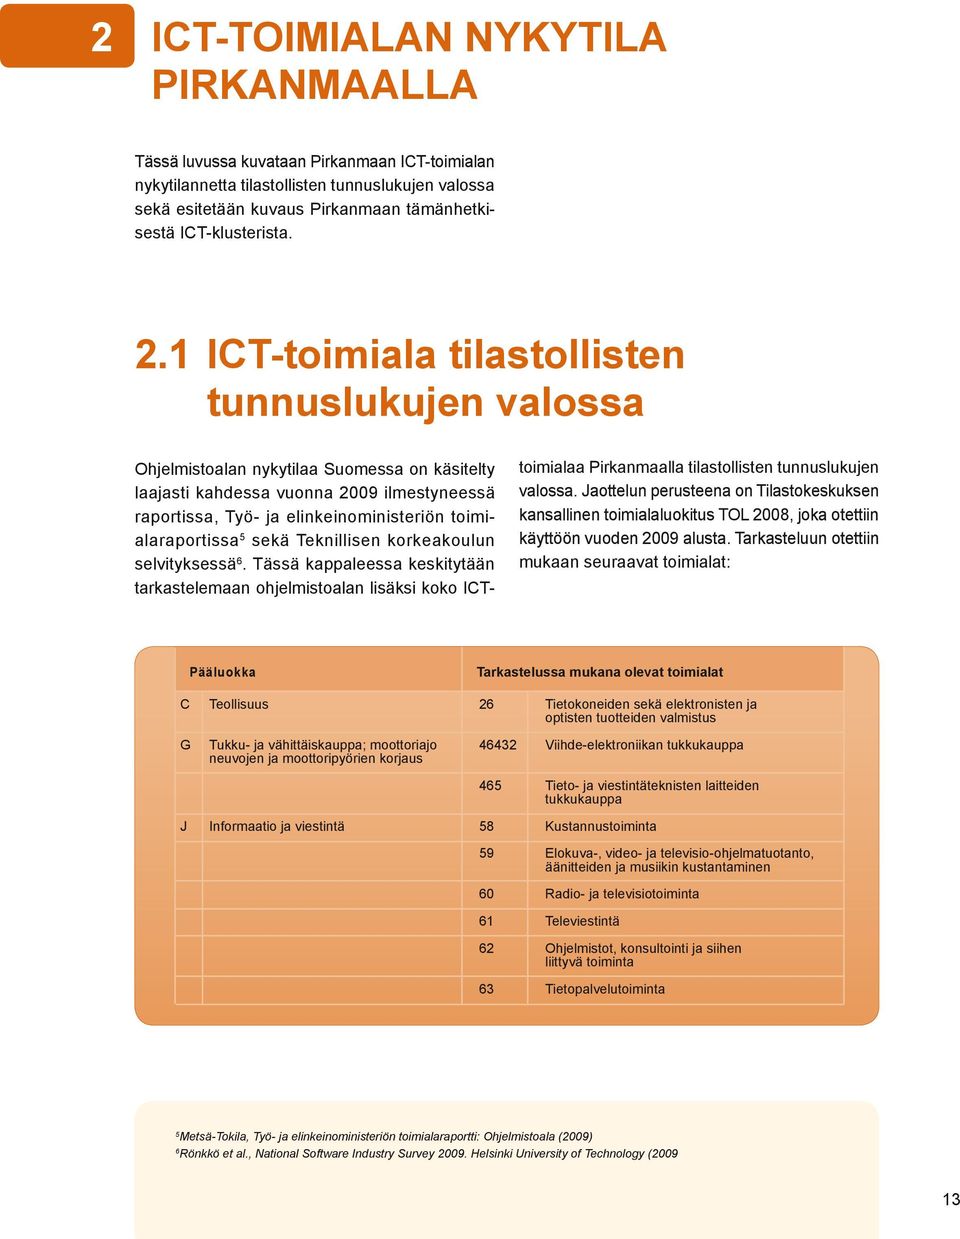 1 ICT-toimiala tilastollisten tunnuslukujen valossa Ohjelmistoalan nykytilaa Suomessa on käsitelty laajasti kahdessa vuonna 2009 ilmestyneessä raportissa, Työ- ja elinkeinoministeriön